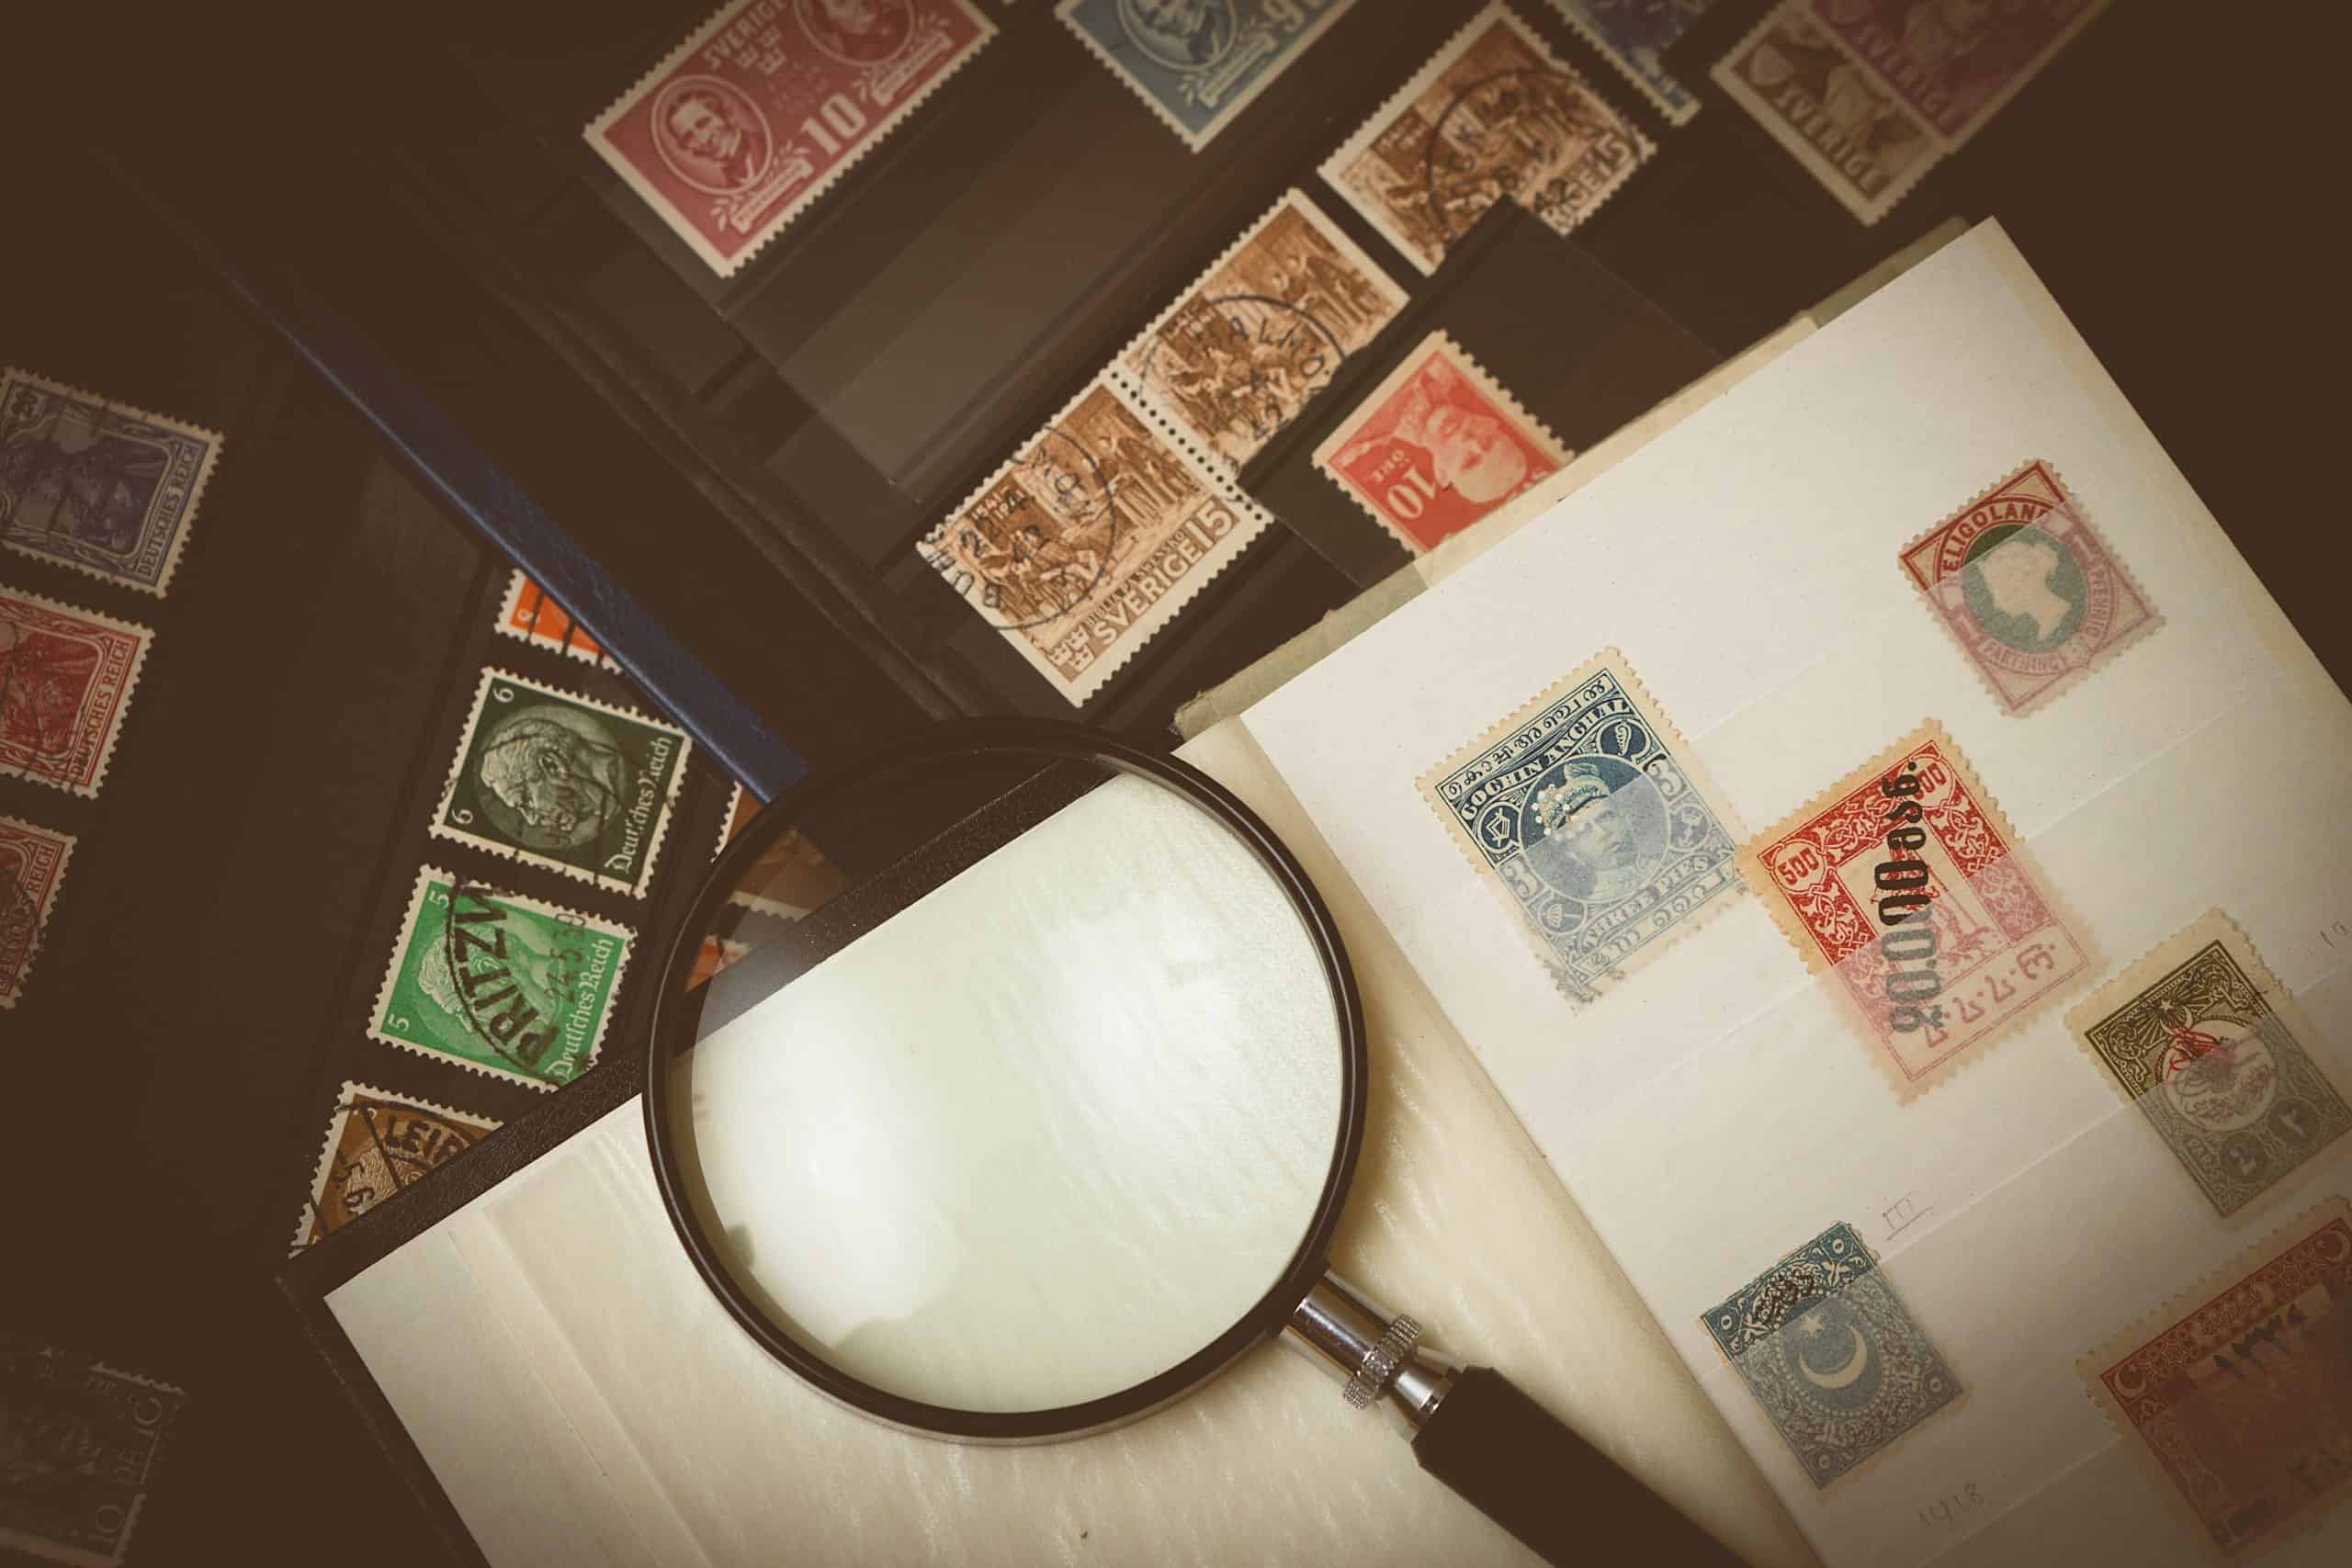 Collection de timbres avec une loupe